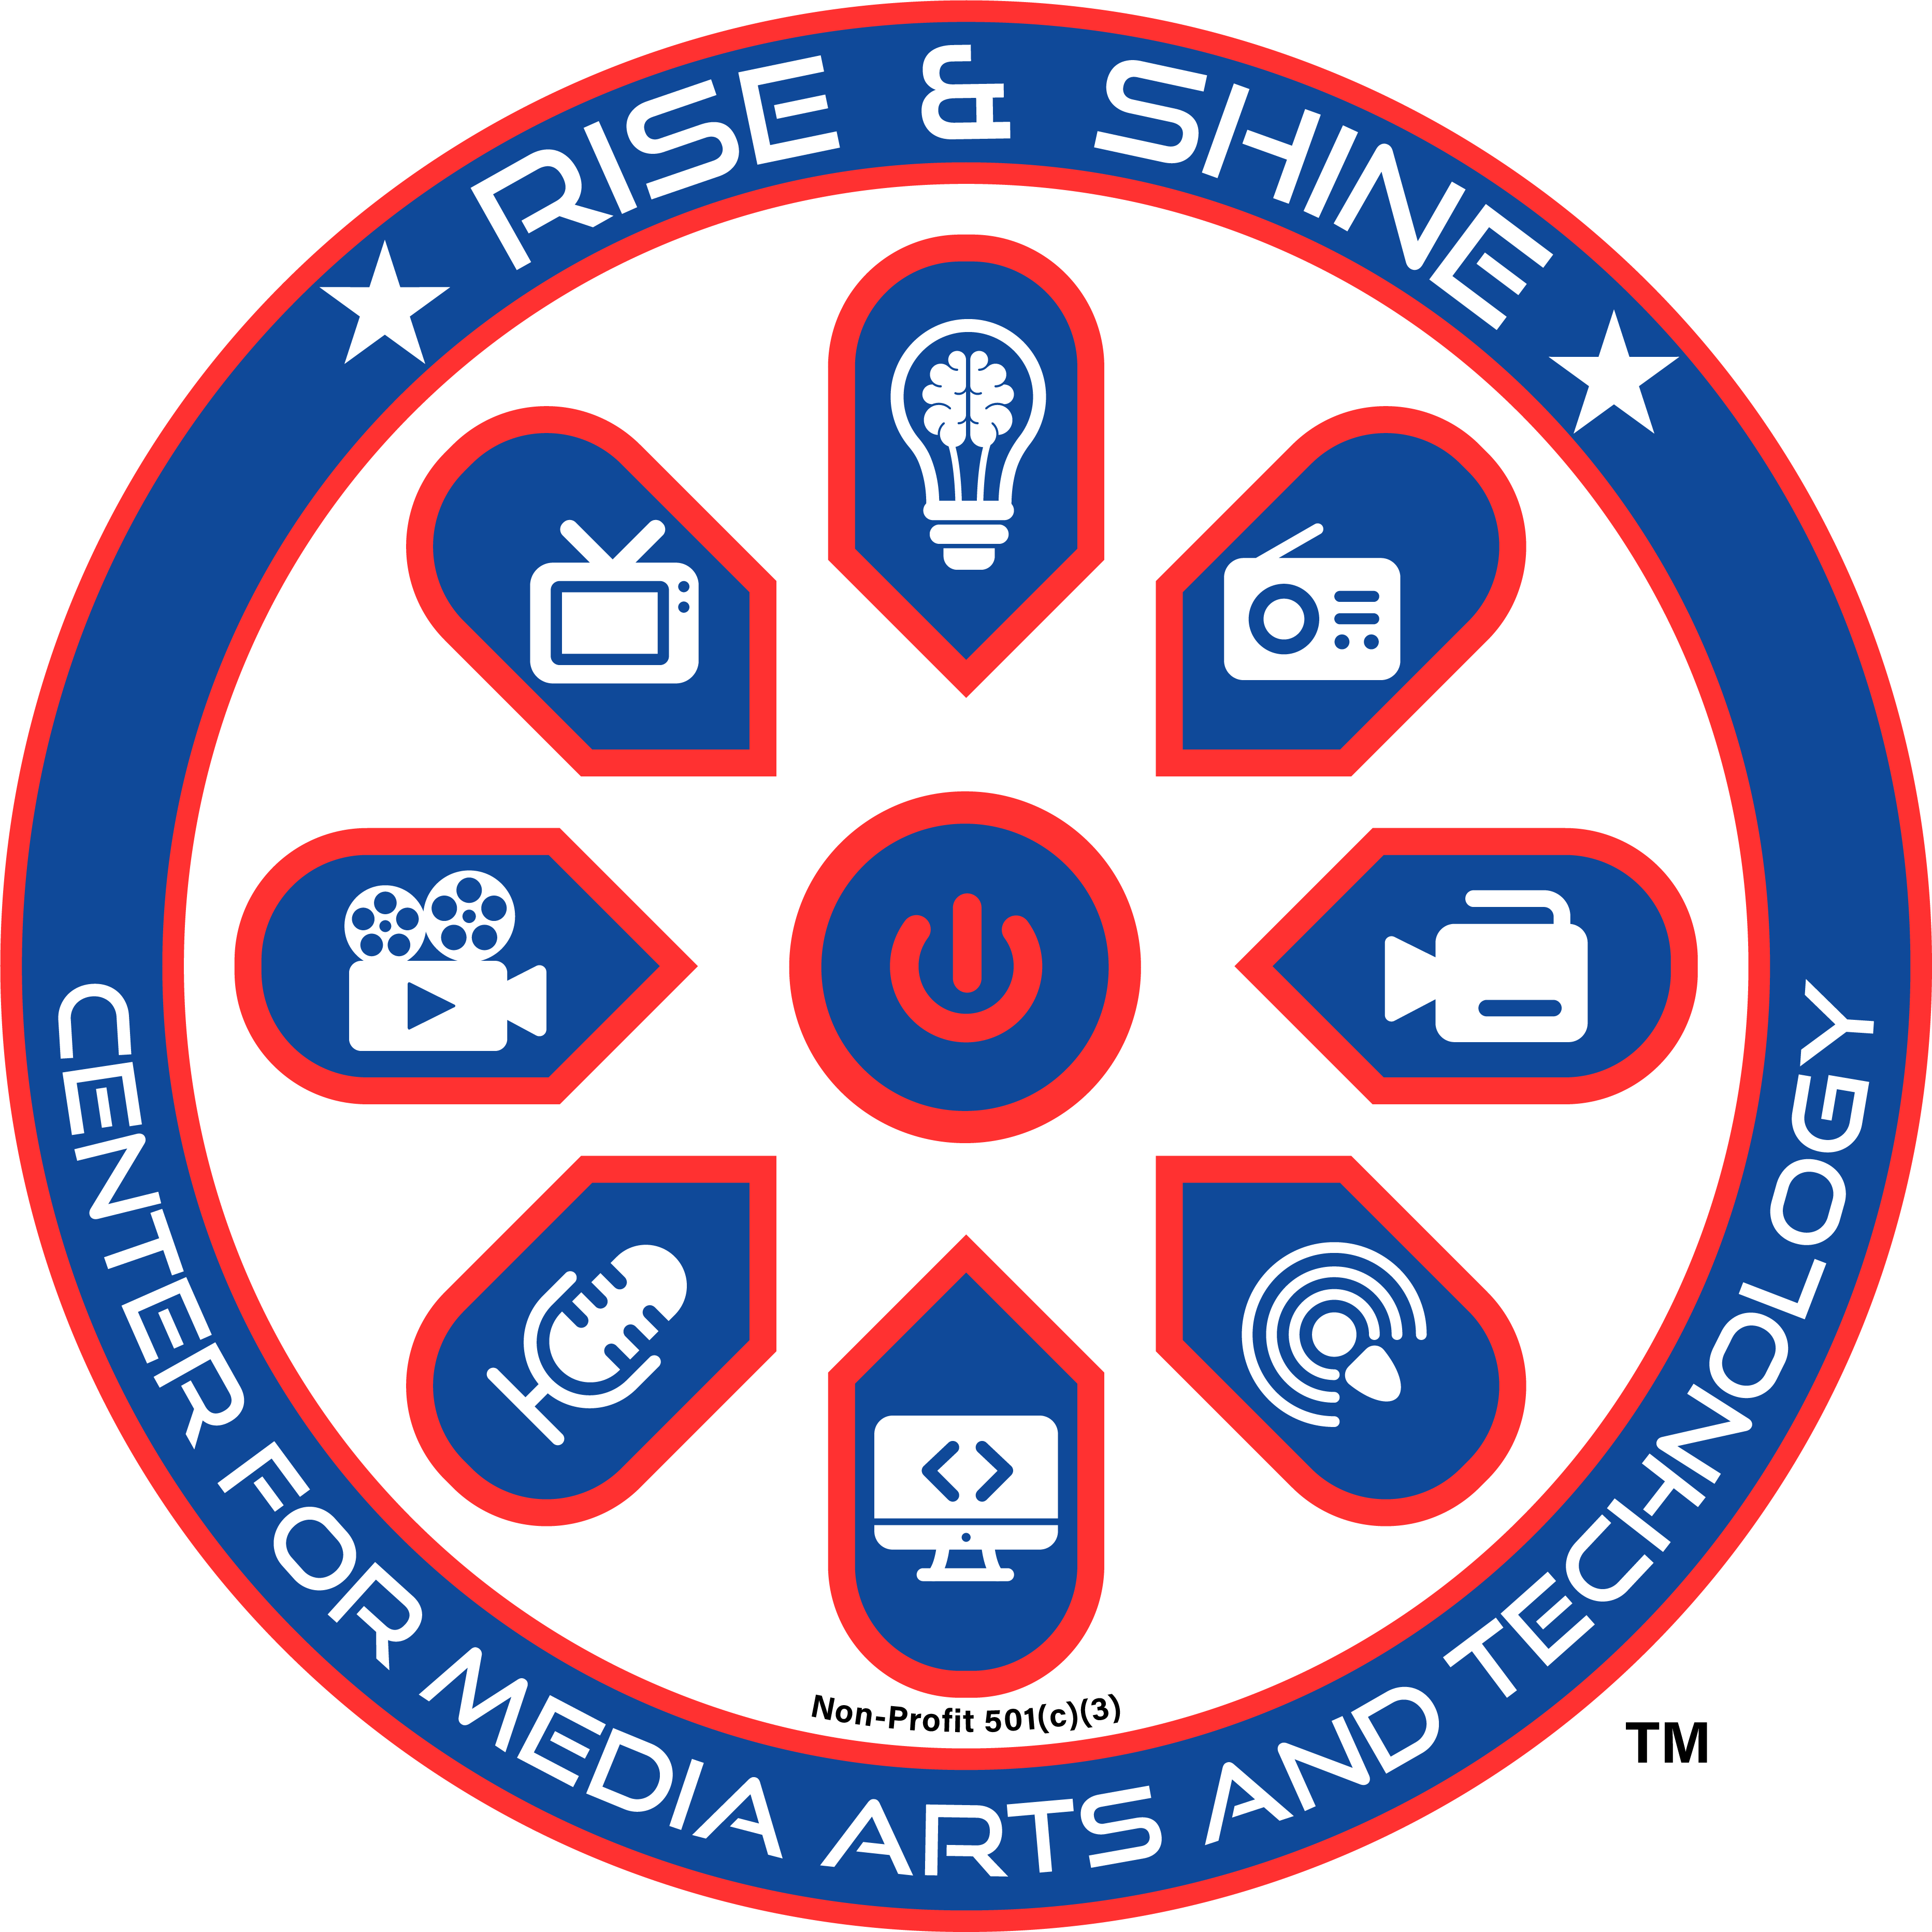 RISE + SHINE CENTER For MEDIA ARTS & TECHNOLOGY